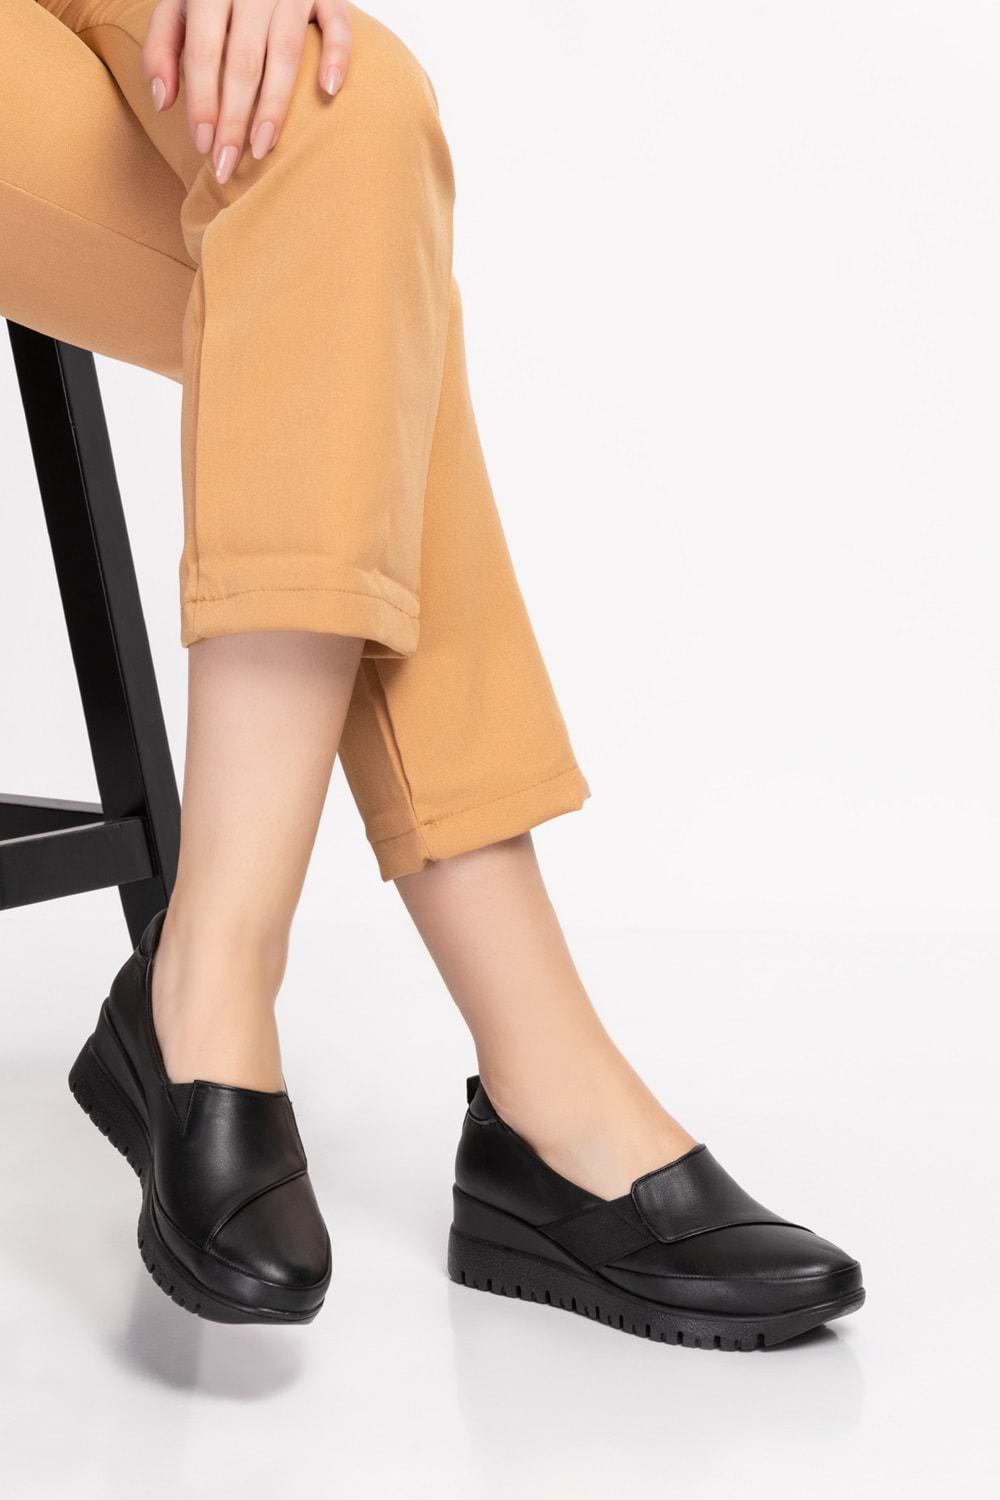 Gondol Kadın Hakiki Deri Anatomik Taban Dolgu Topuklu Günlük Ayakkabı pyt.6205 - Siyah - 36